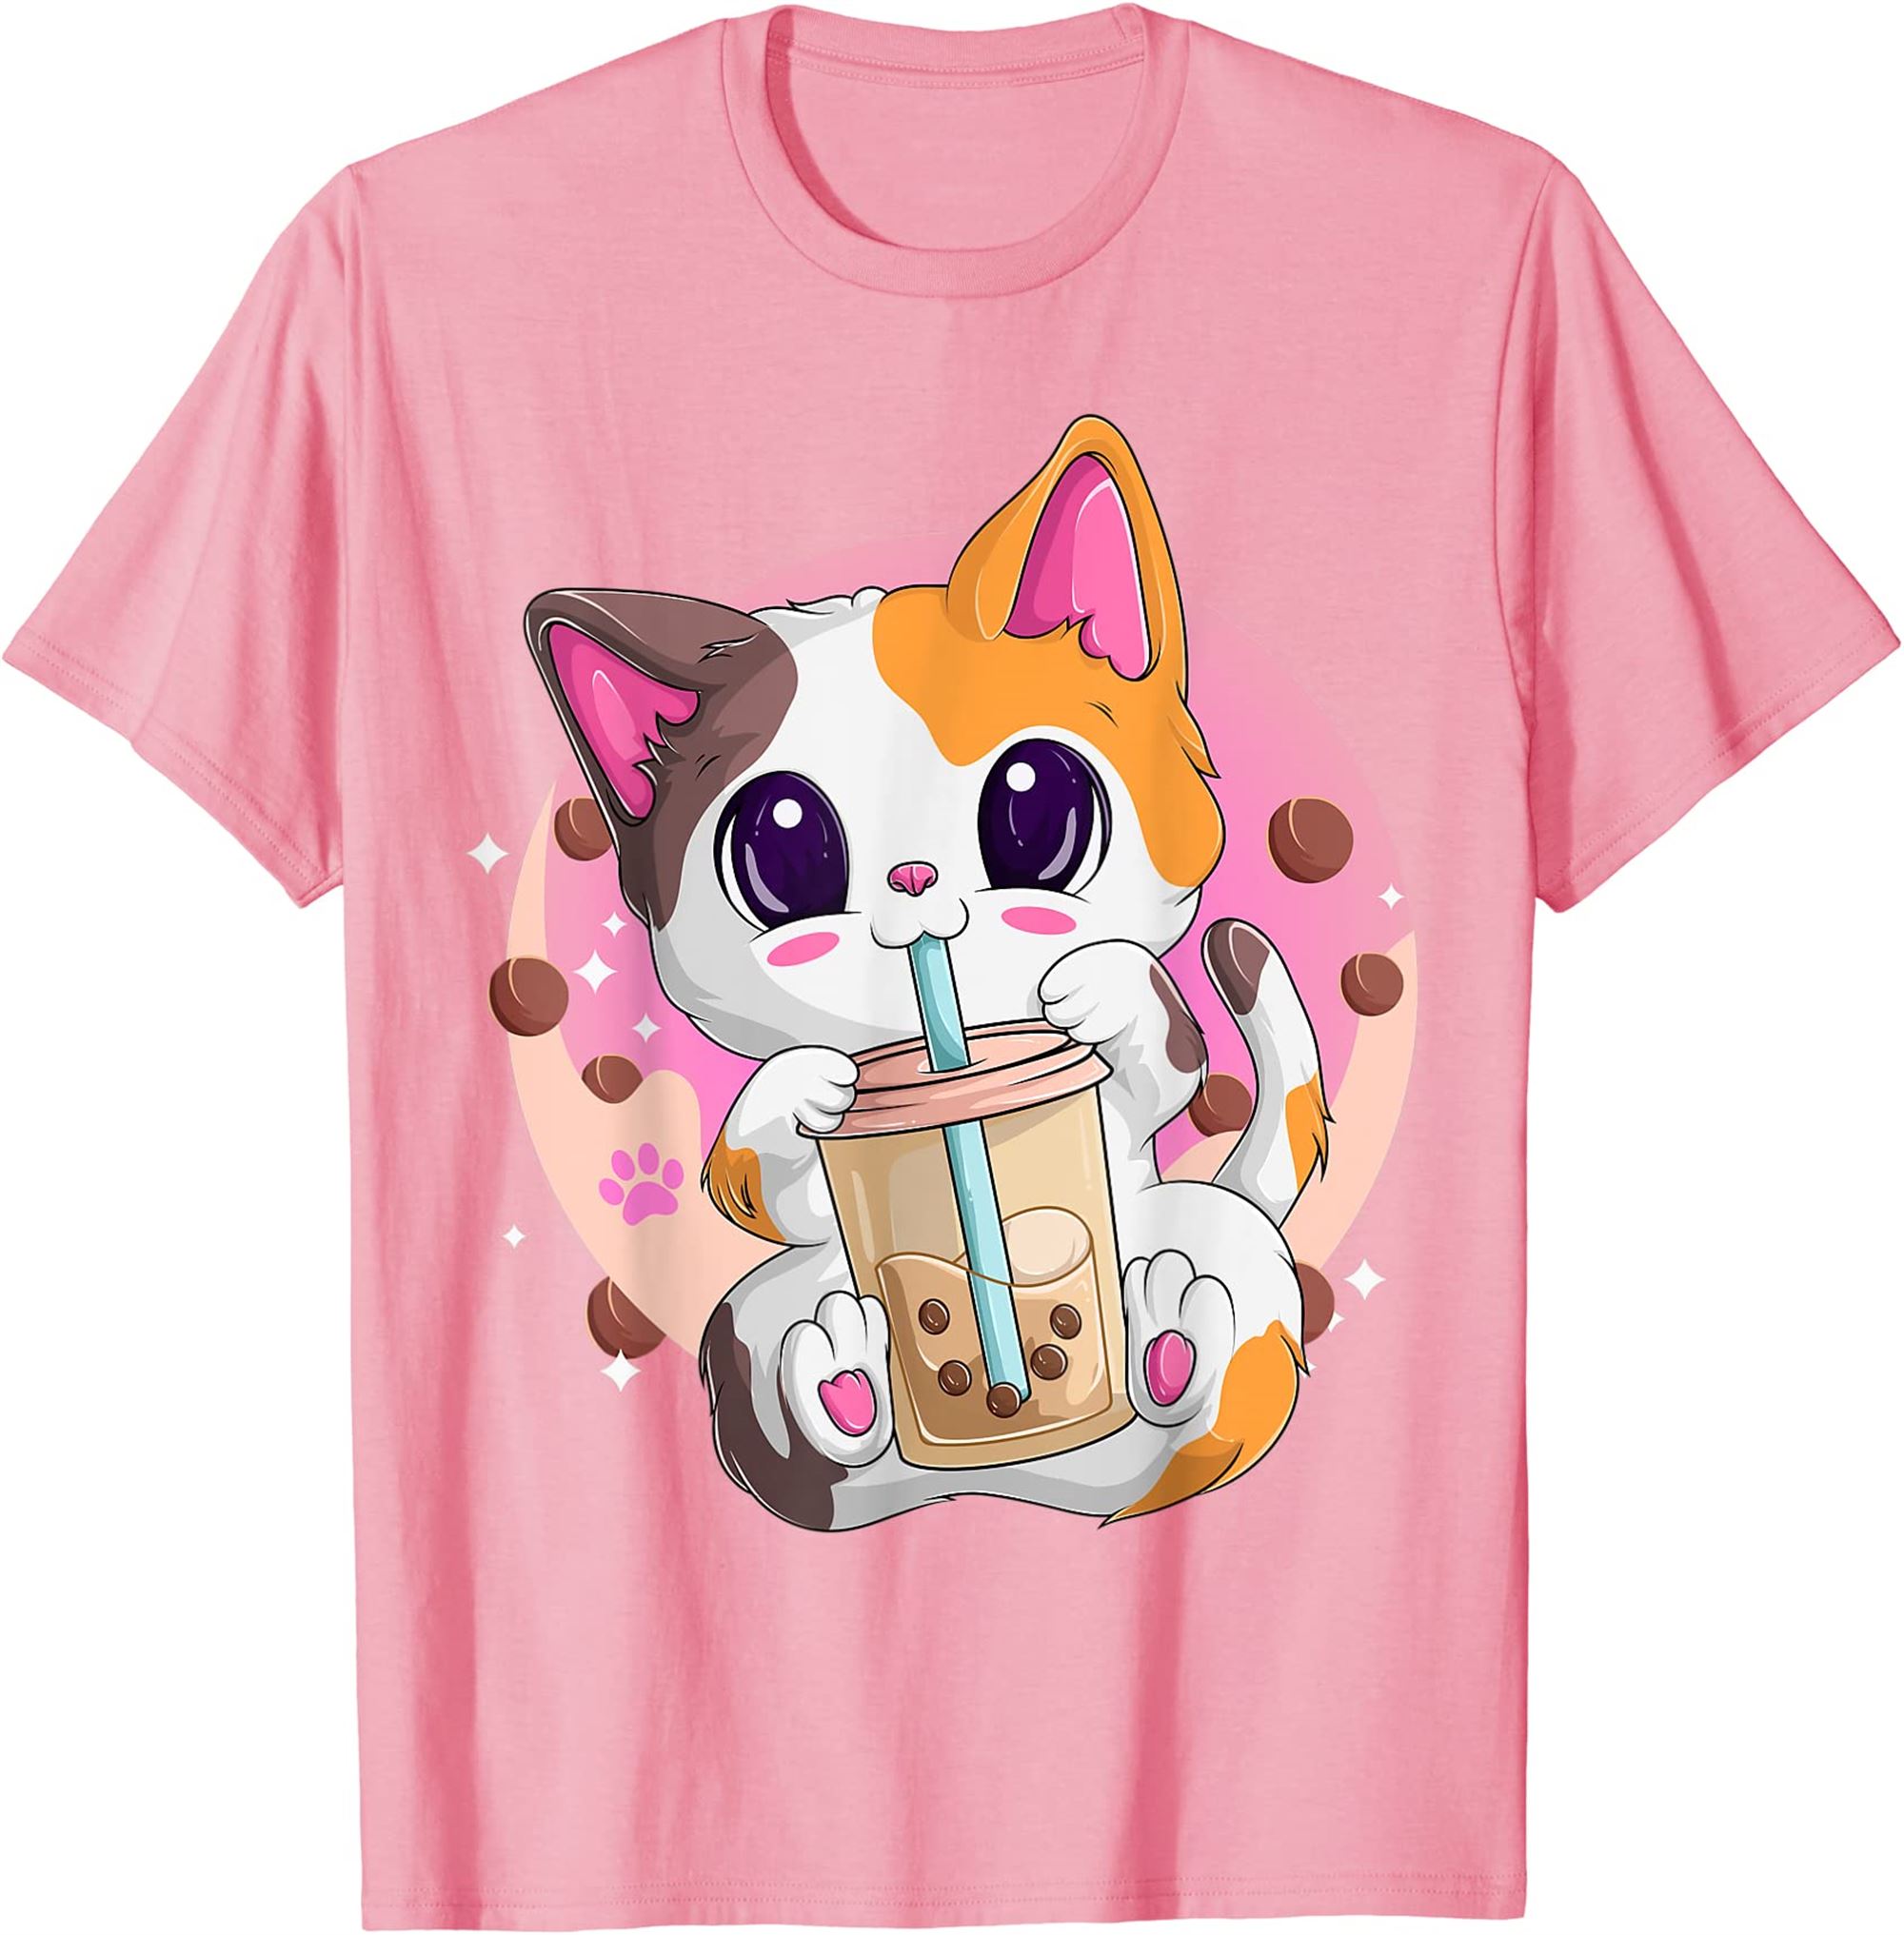 Bubble Tea Cat Anime Shirts For Women Kawaii Neko Boba Tea T-shirt Full Size Up To 5xl